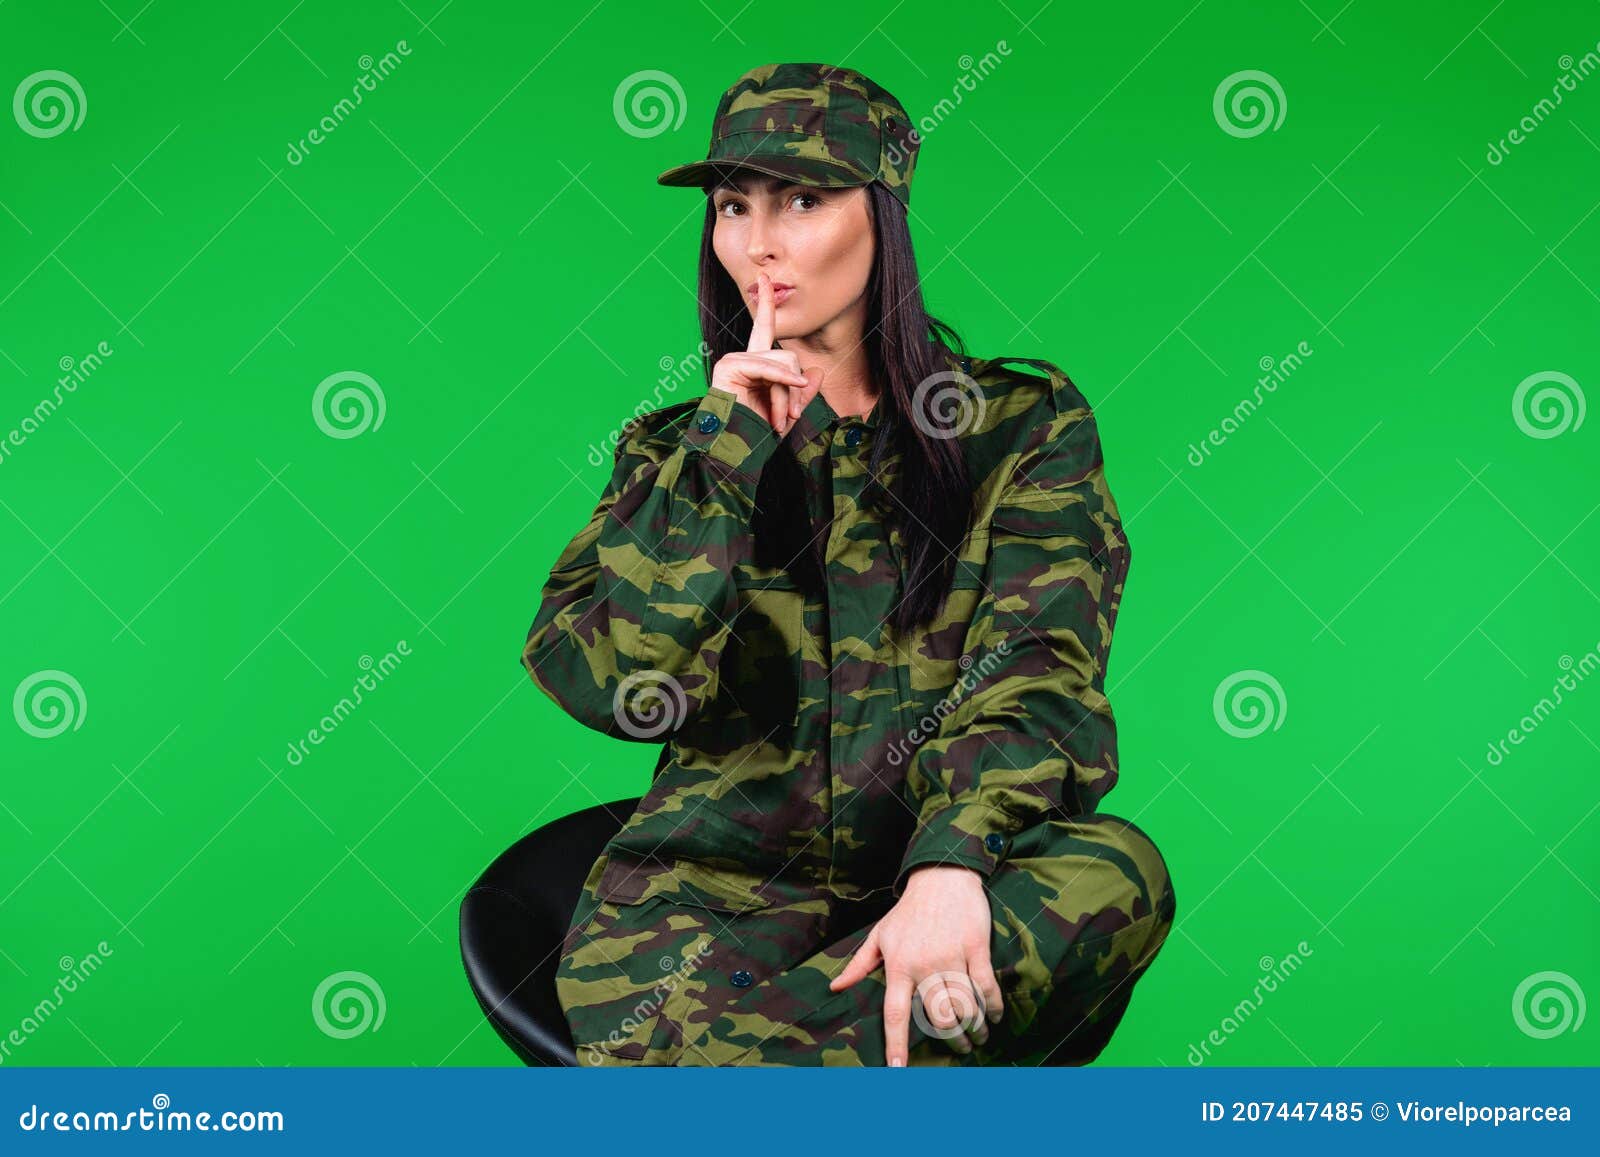 Mujer con ropa militar con máscara sobre fondo claro y con